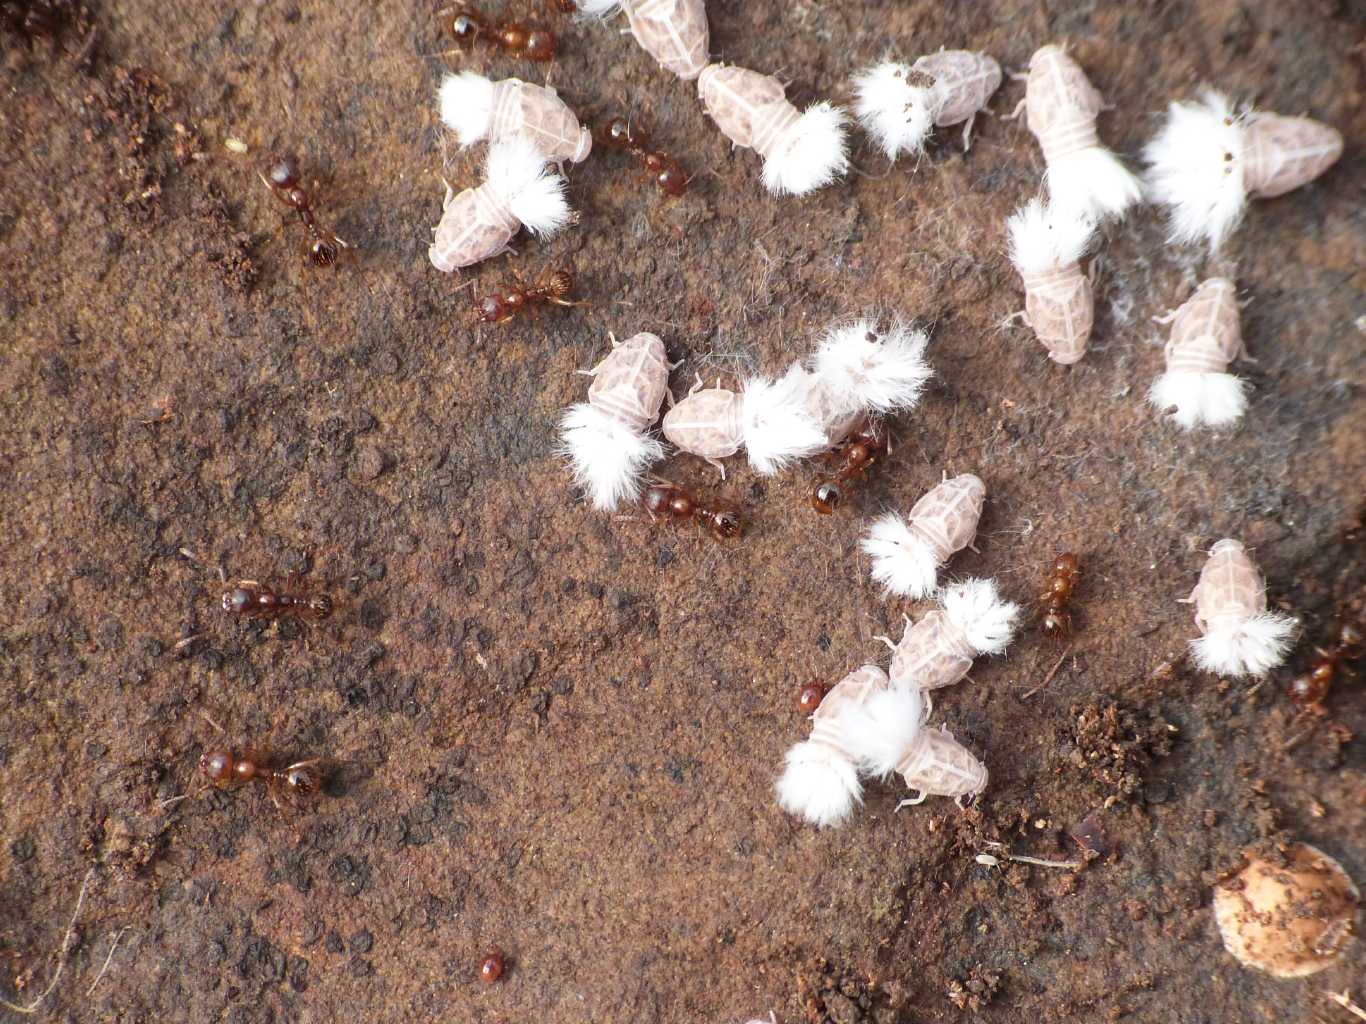 Reptalus sp. ospiti delle formiche Myrmica sp. da Tolfa (RM)